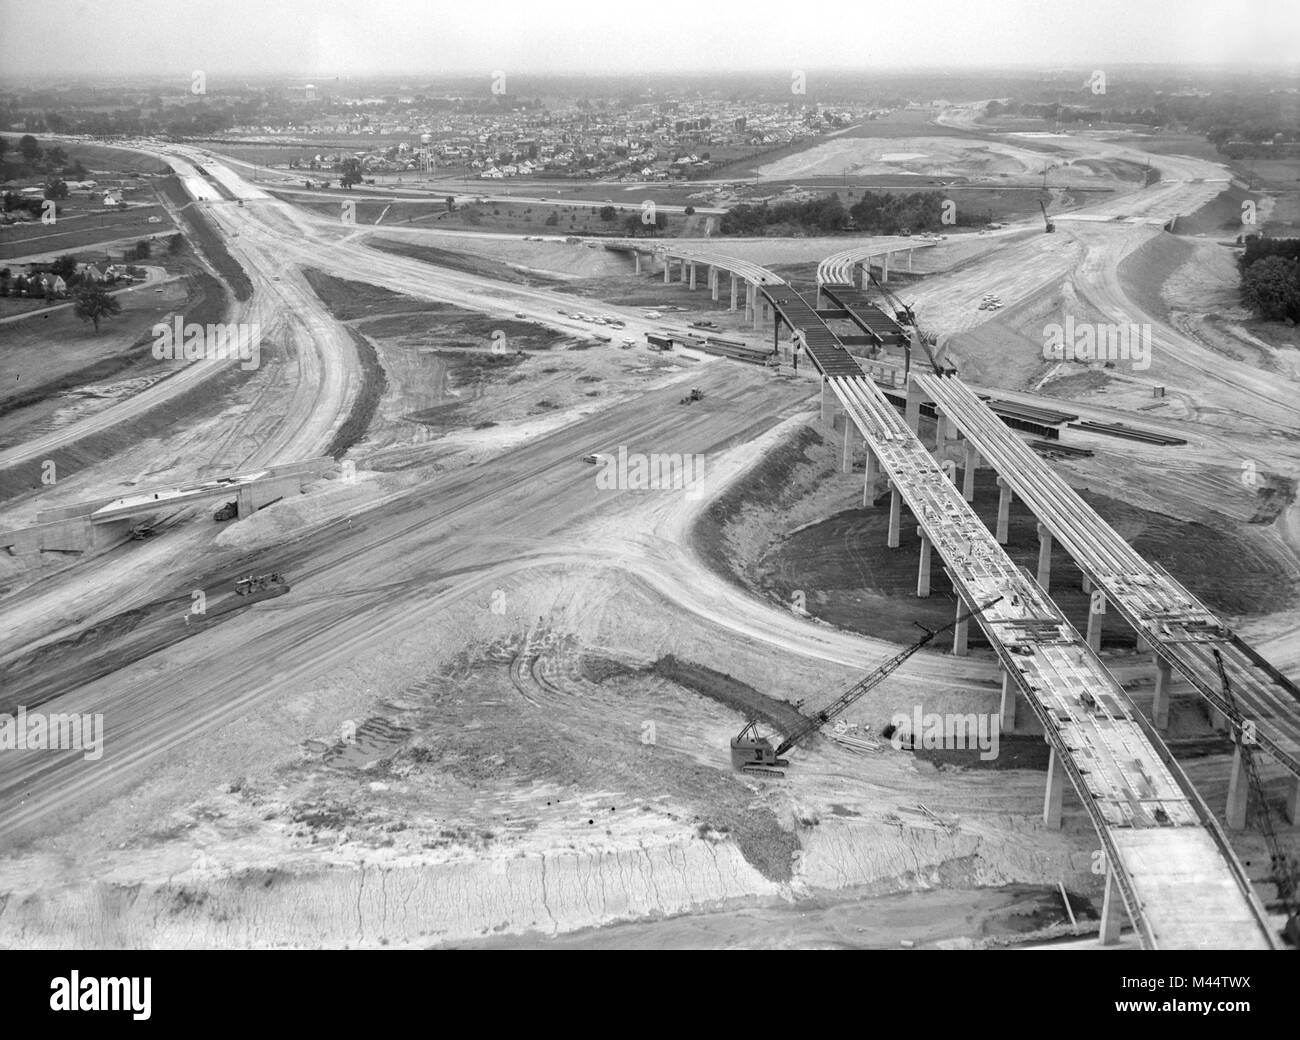 Vista aerea di costruzione cercando NW su NW expressway (Kennedy) e Tri-State Expressway in Chicago, ca. 1960. Foto Stock